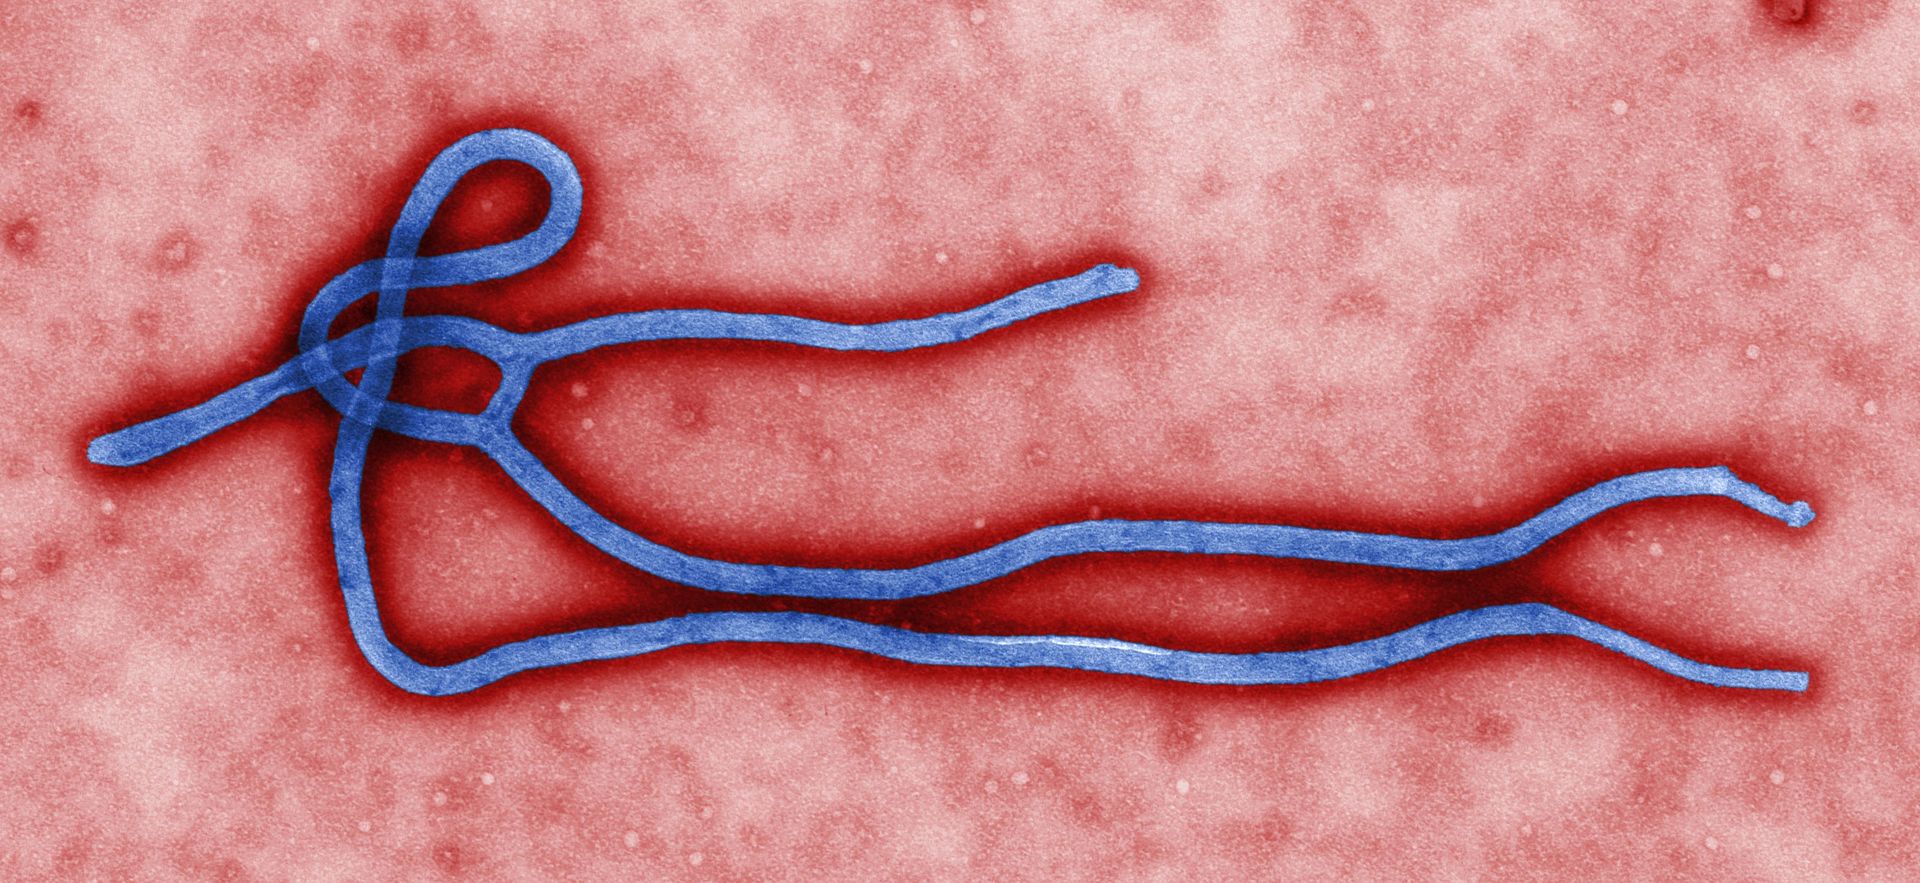 Вирус Эбола. Изображение © Wikimedia Commons / CDC / Cynthia Goldsmith 